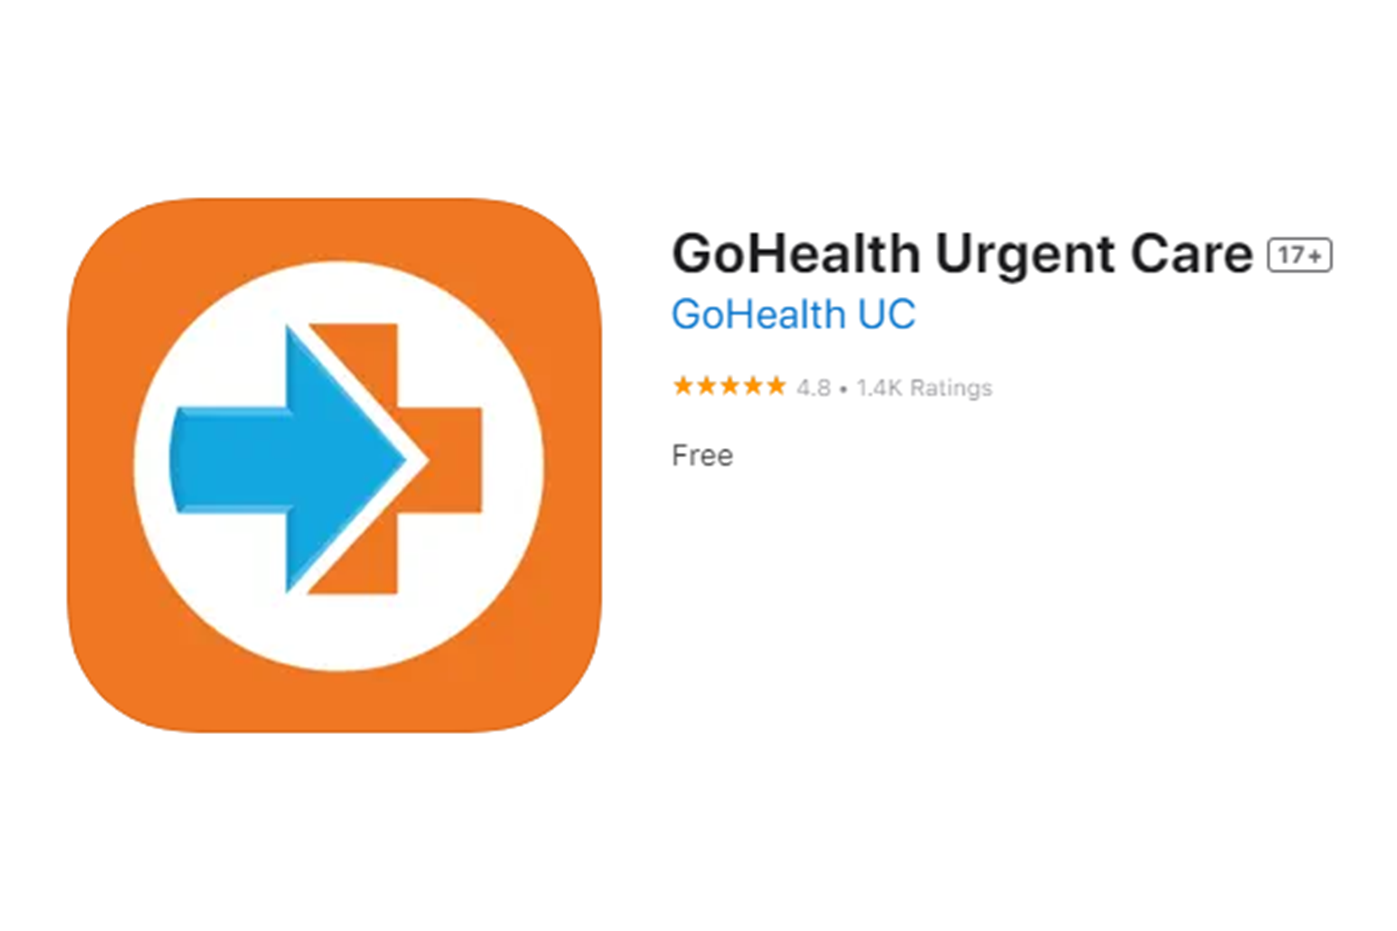 GoHealth Urgent Care app in the App Store.